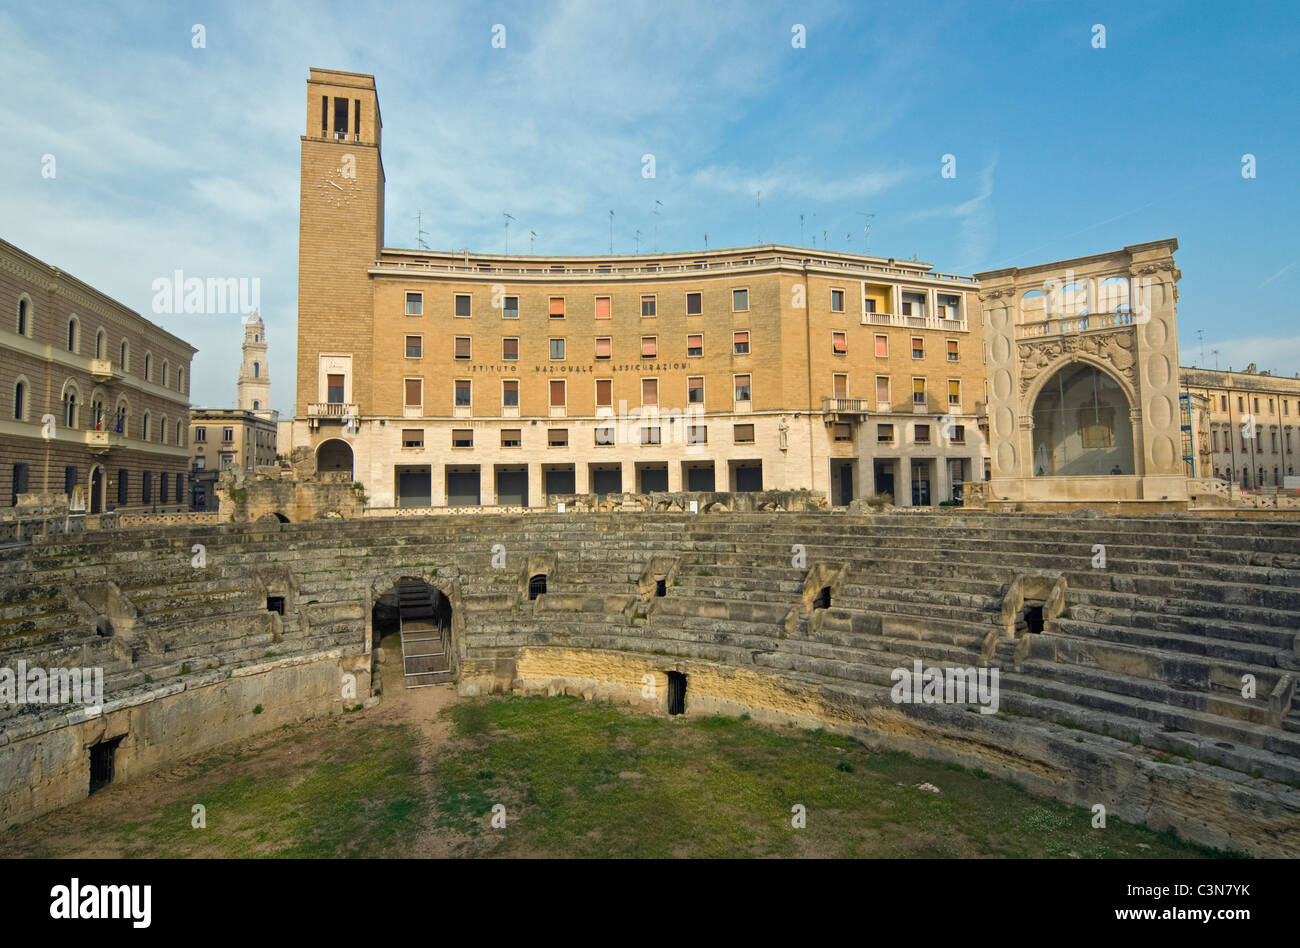 Roman Amphitheatre and INA Building (Italian Rationalist-Fascist Architecture), Sant'Oronzo Sq., Lecce, Apulia (Puglia), Italy Stock Photo